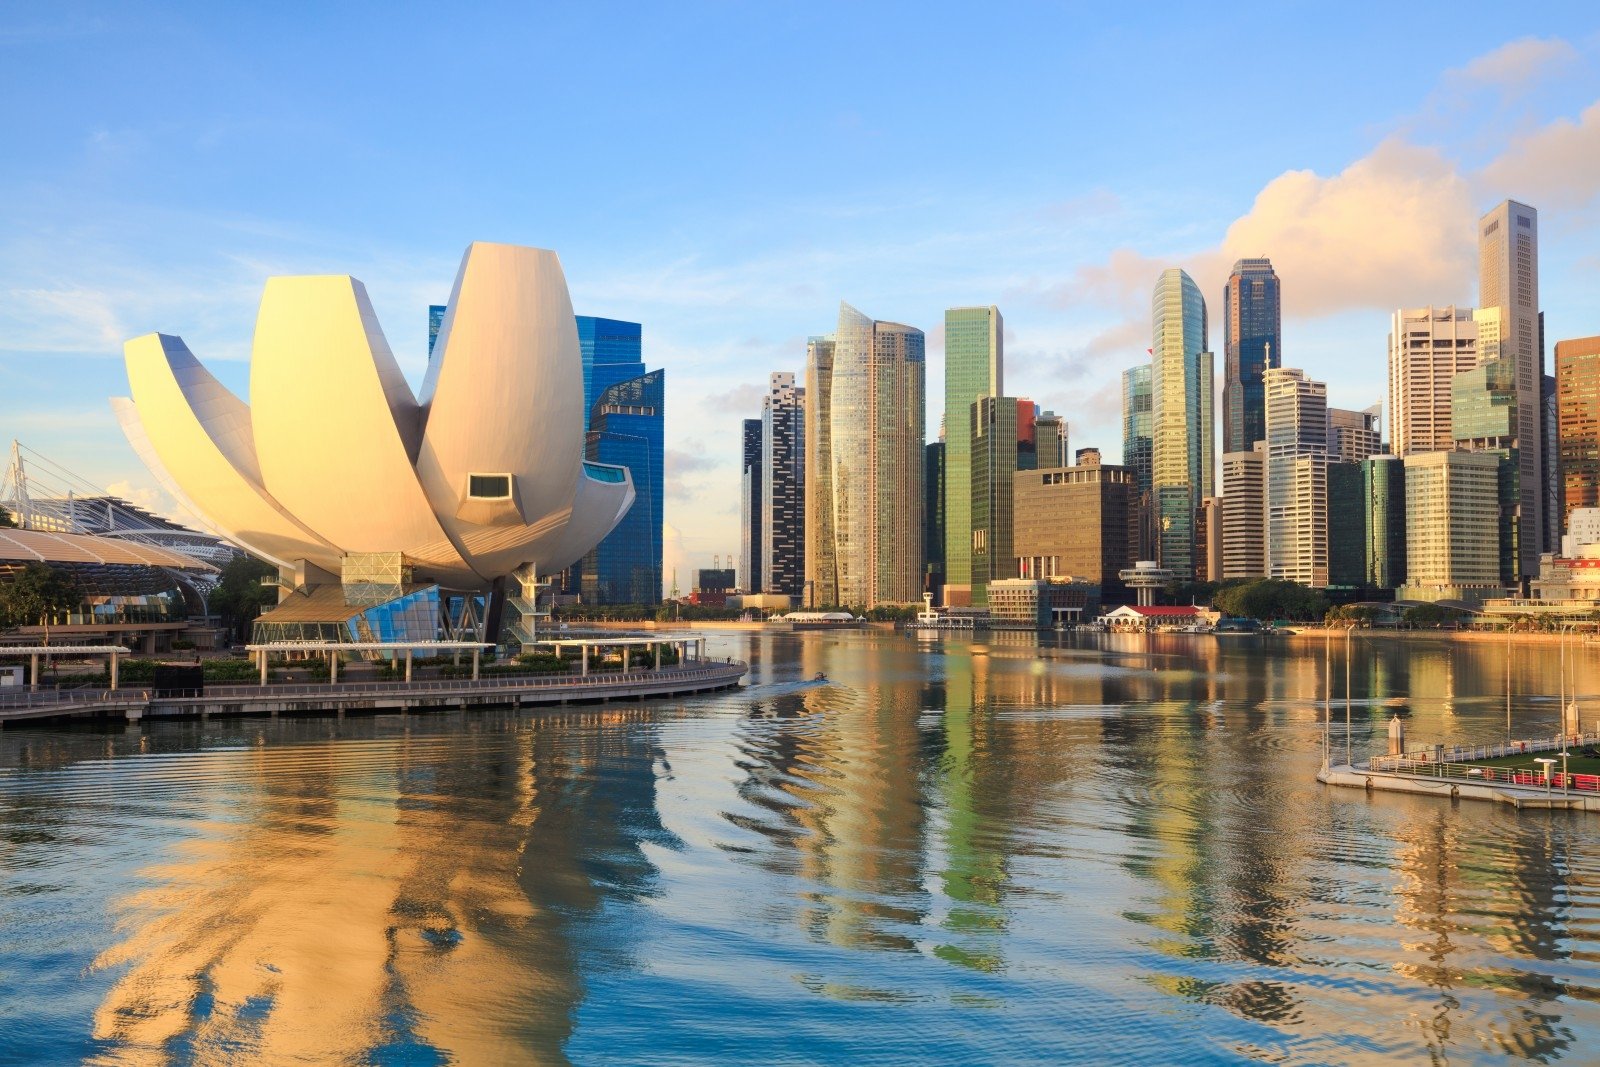 singapūro prekybos sistema pasinaudoti akcijų pasirinkimo sandoriais prieš ipo